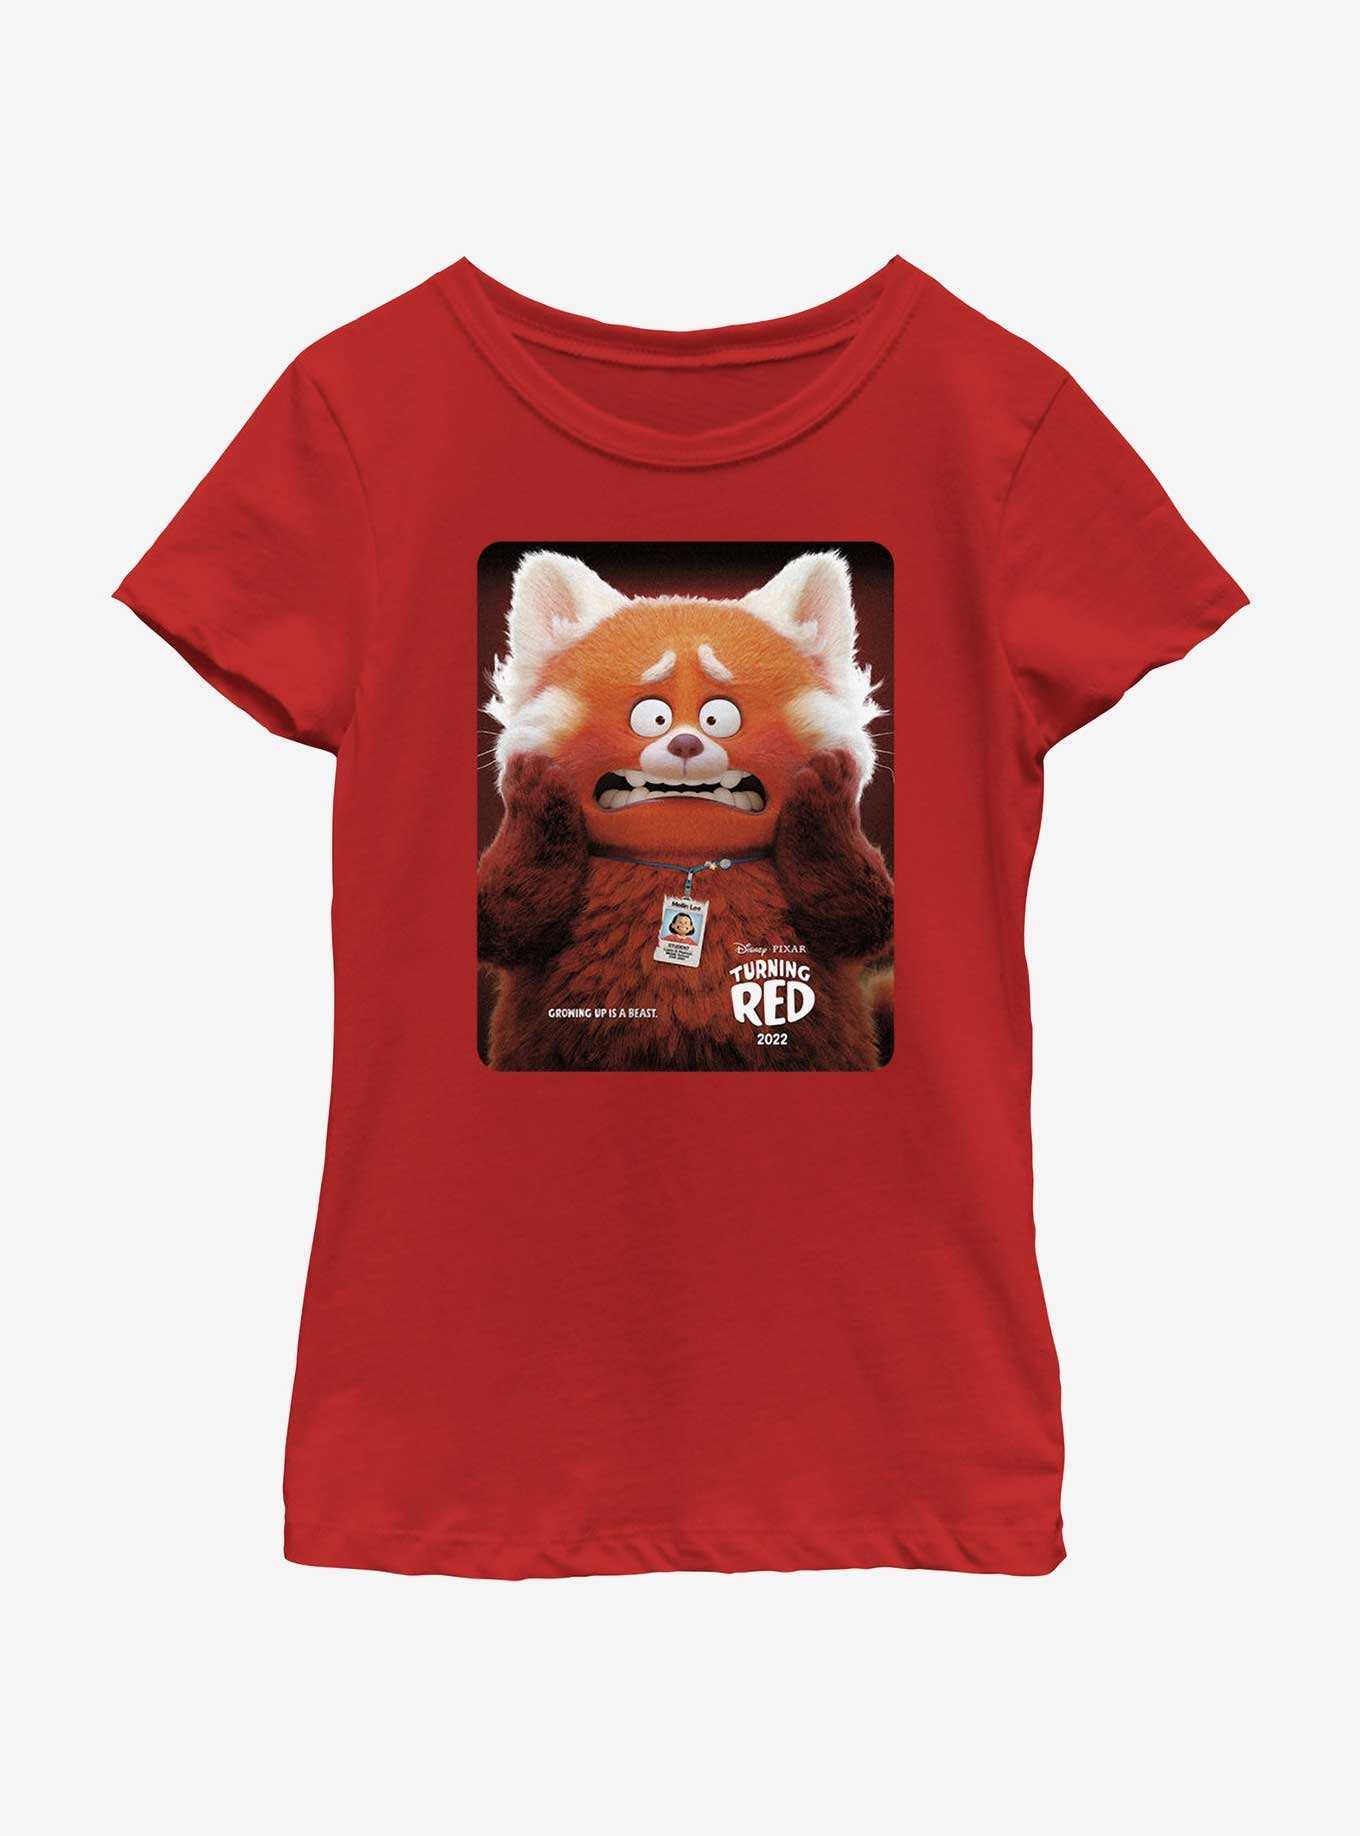 Disney Pixar Turning Red Panda Poster Youth Girls T-Shirt, , hi-res